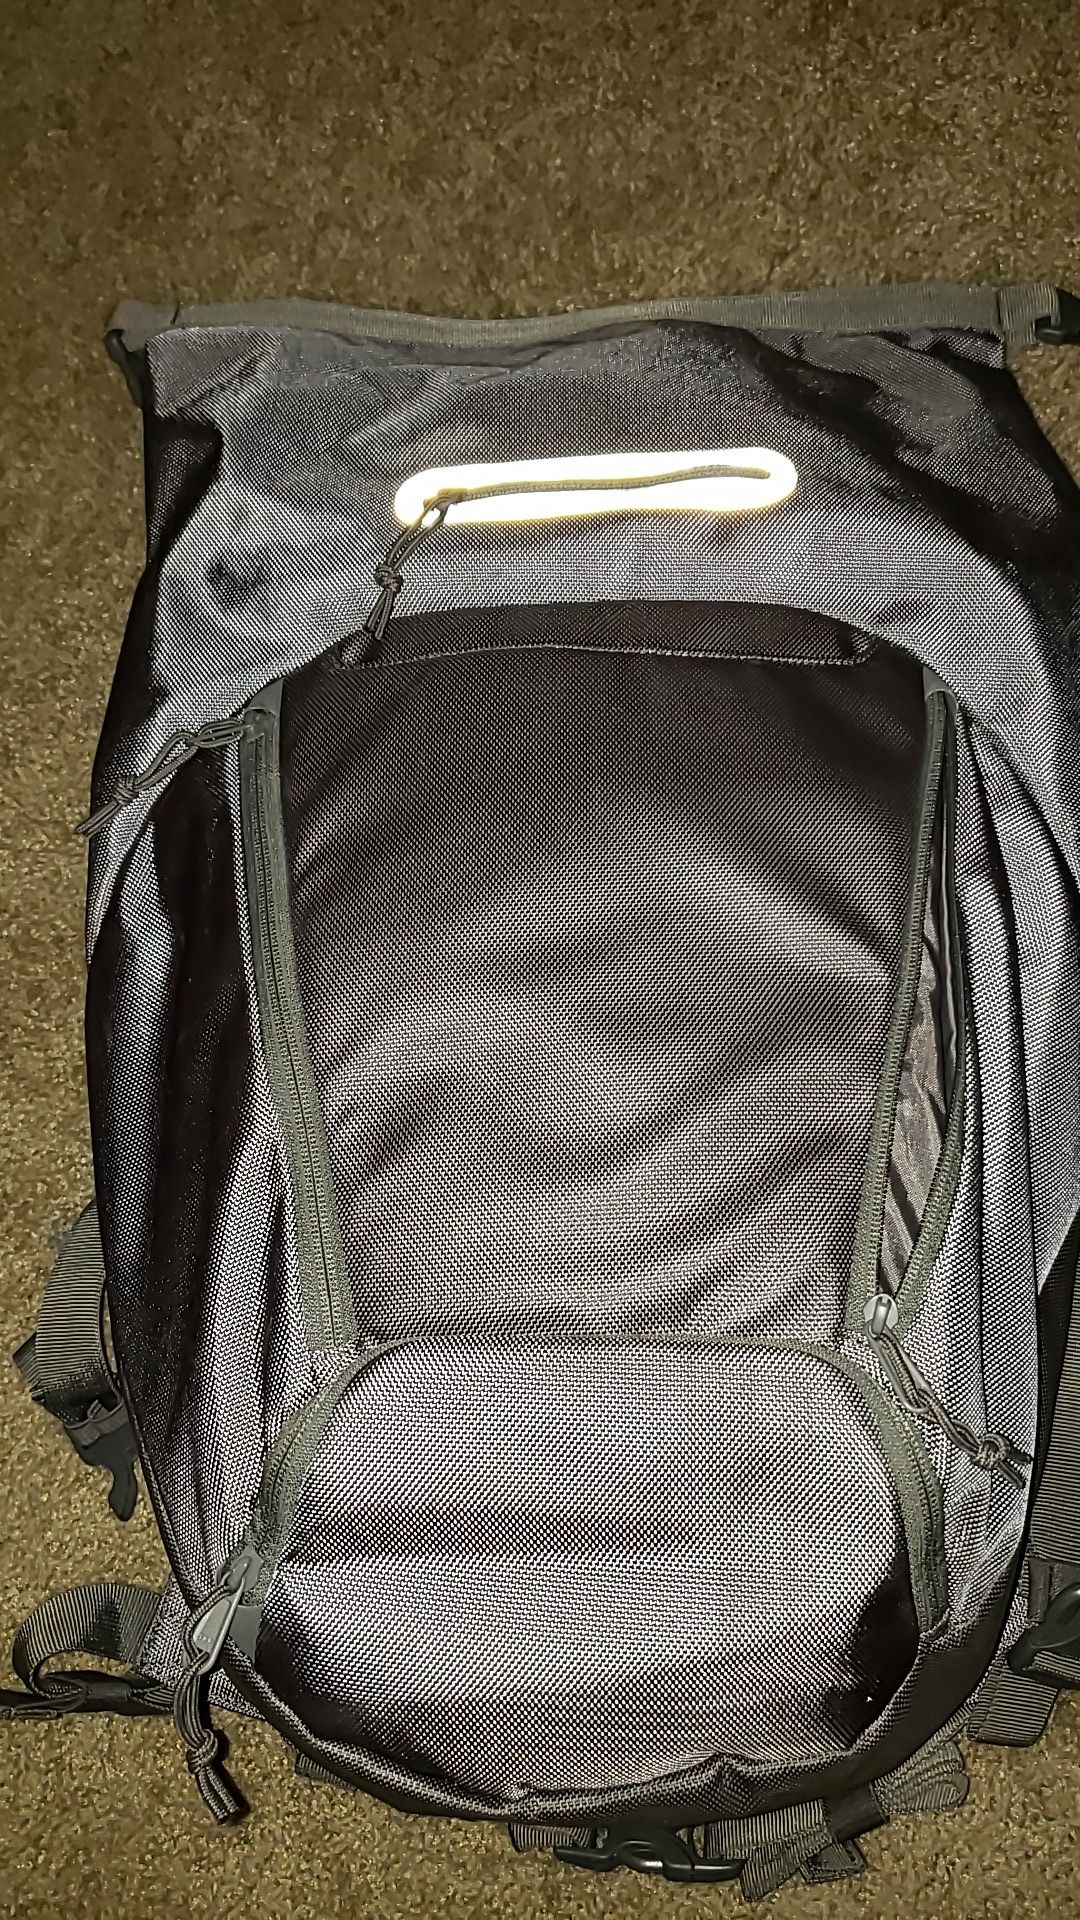 5.11 backpack